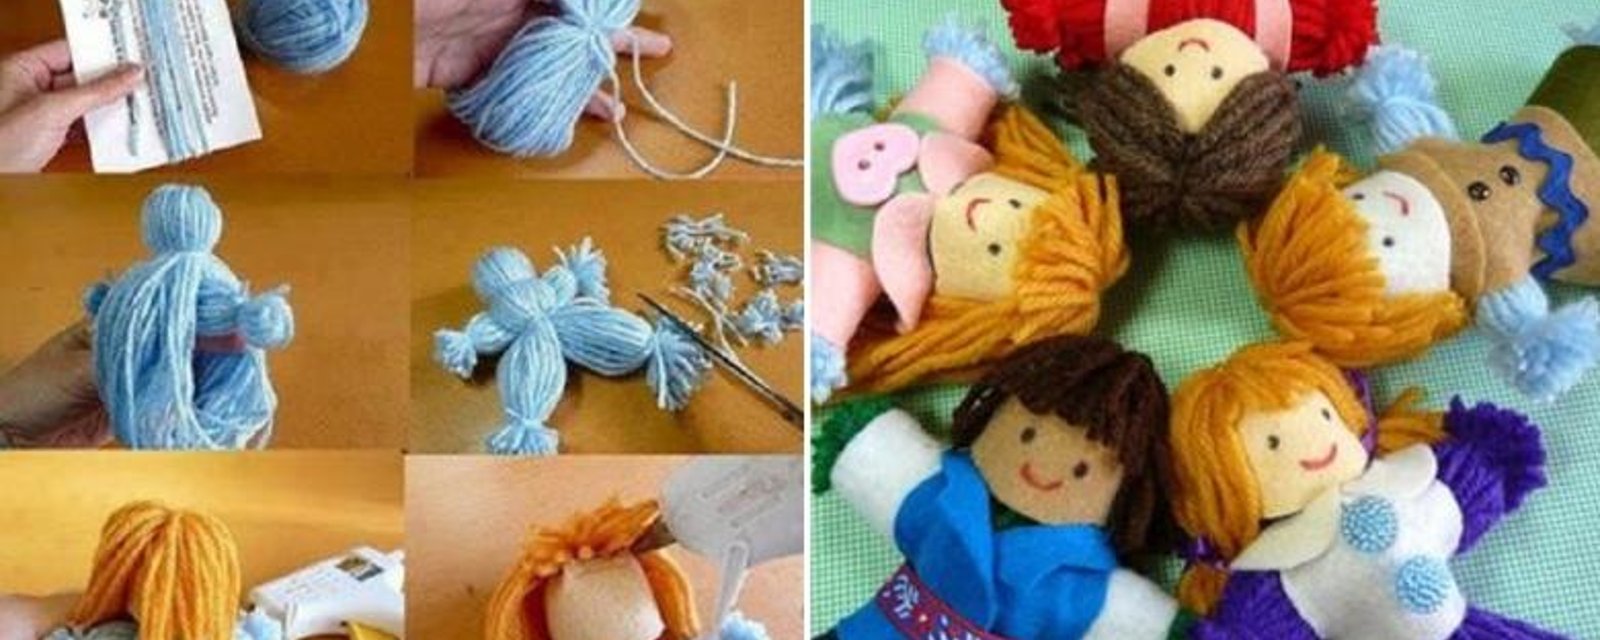 Comment faire d'adorables poupées, avec de la simple laine! 